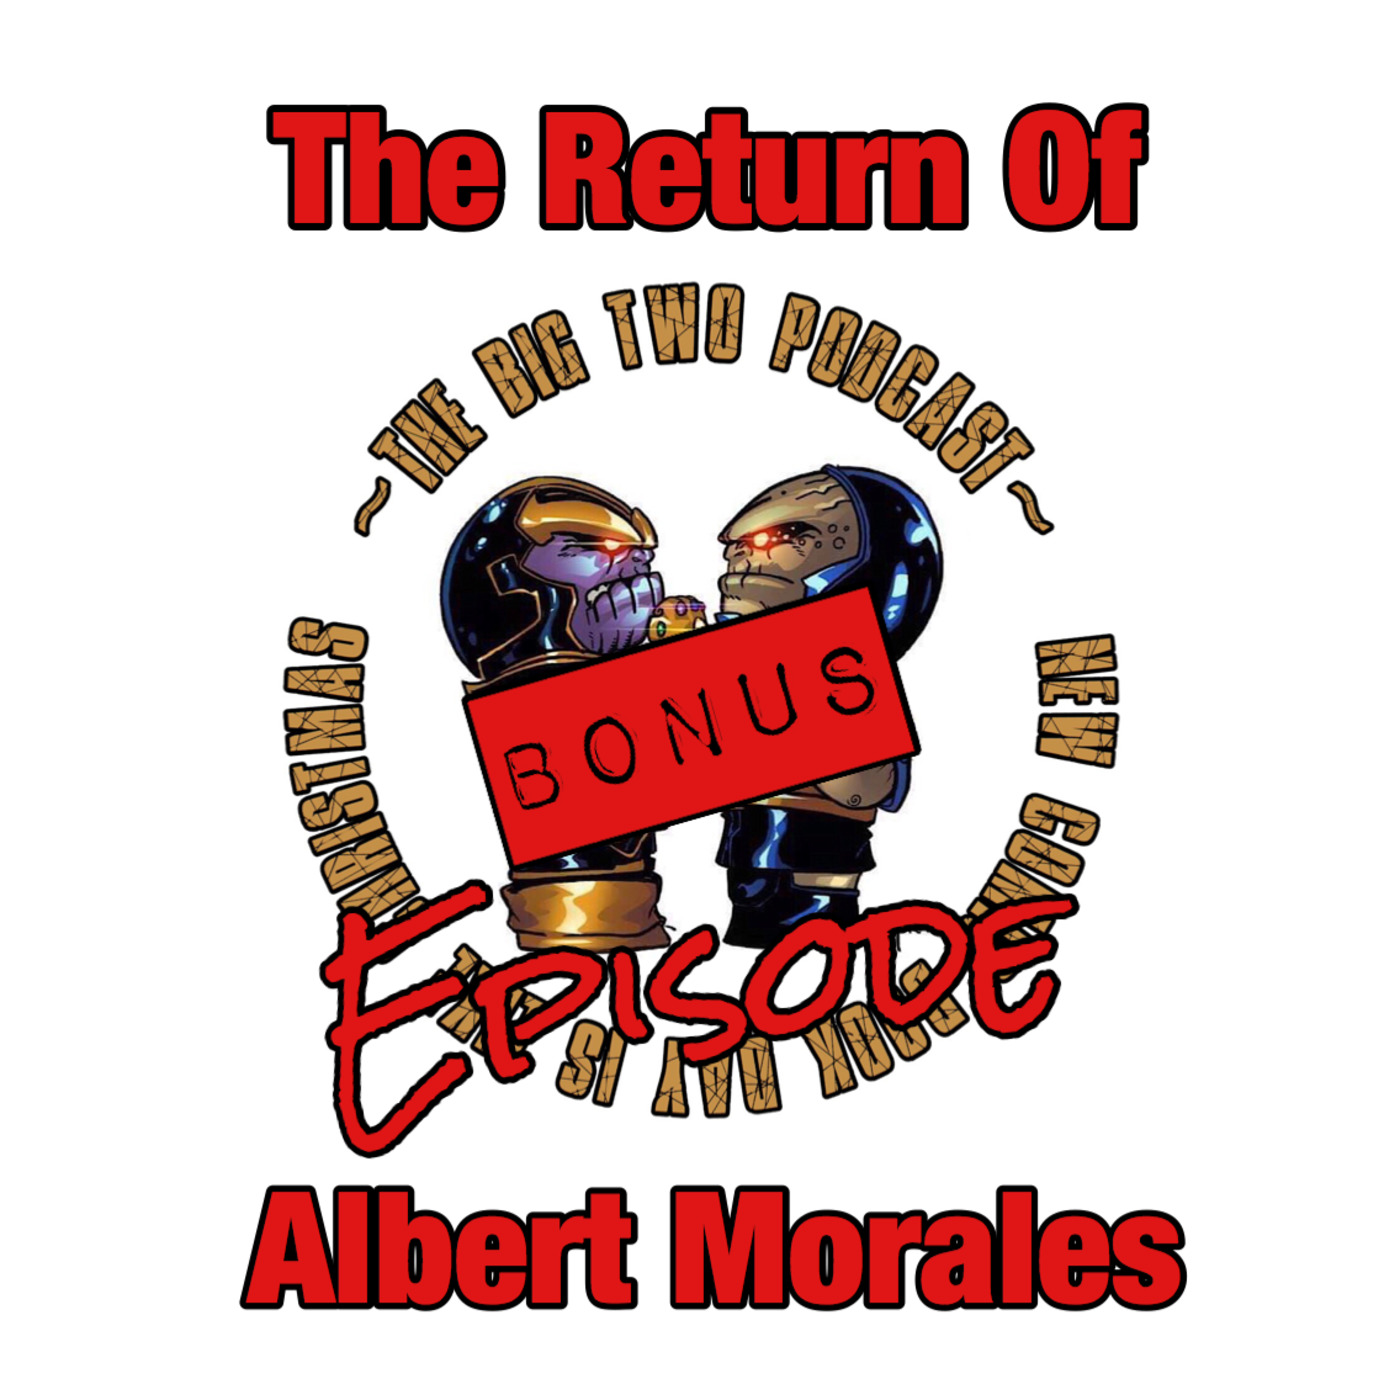 The Return Of Albert Morales